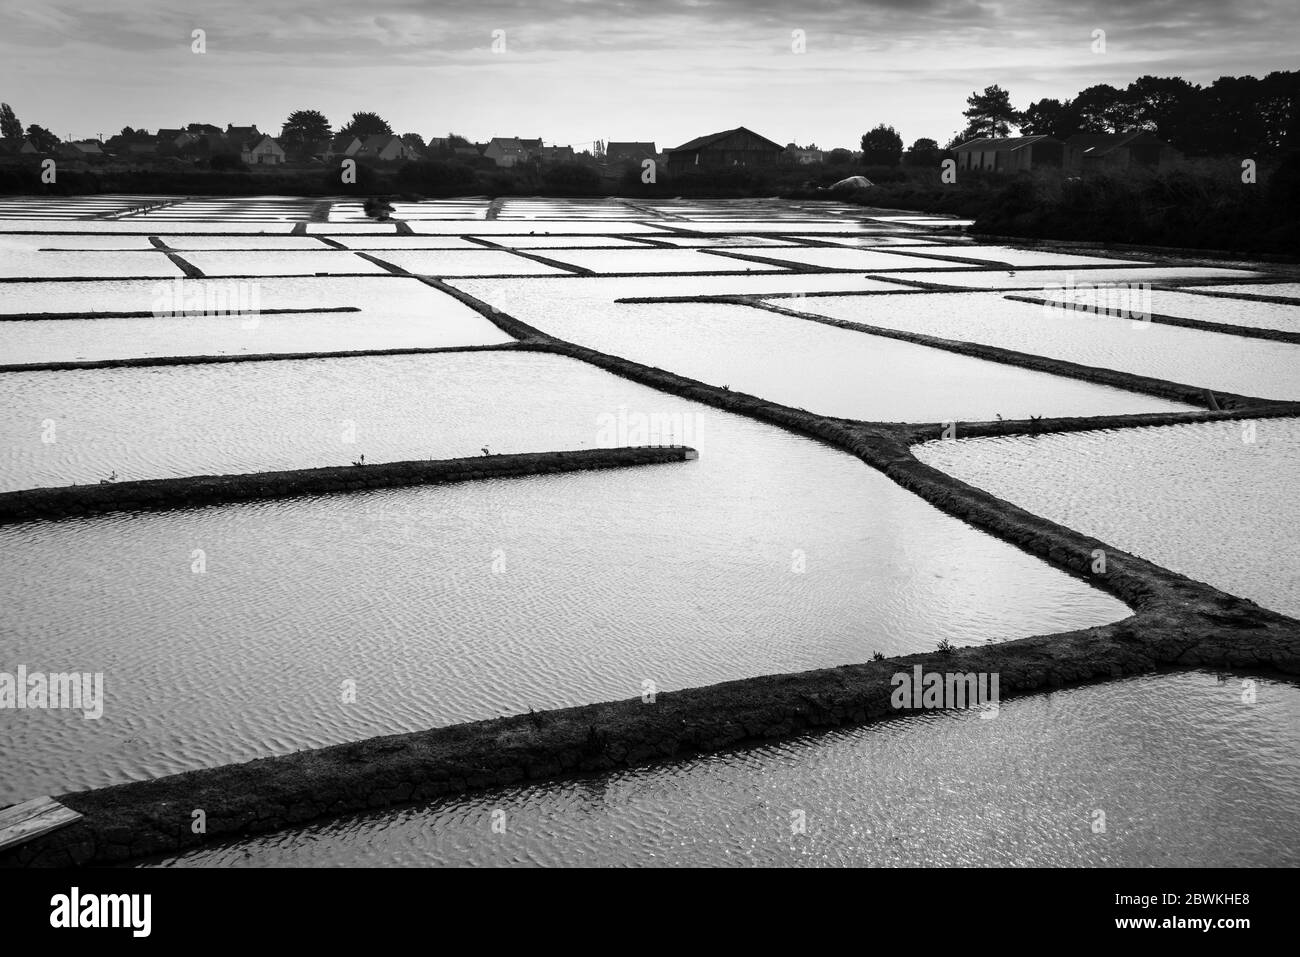 Paysage graphique des marais salants de la péninsule de Guérande, France. Photographie en noir et blanc Banque D'Images